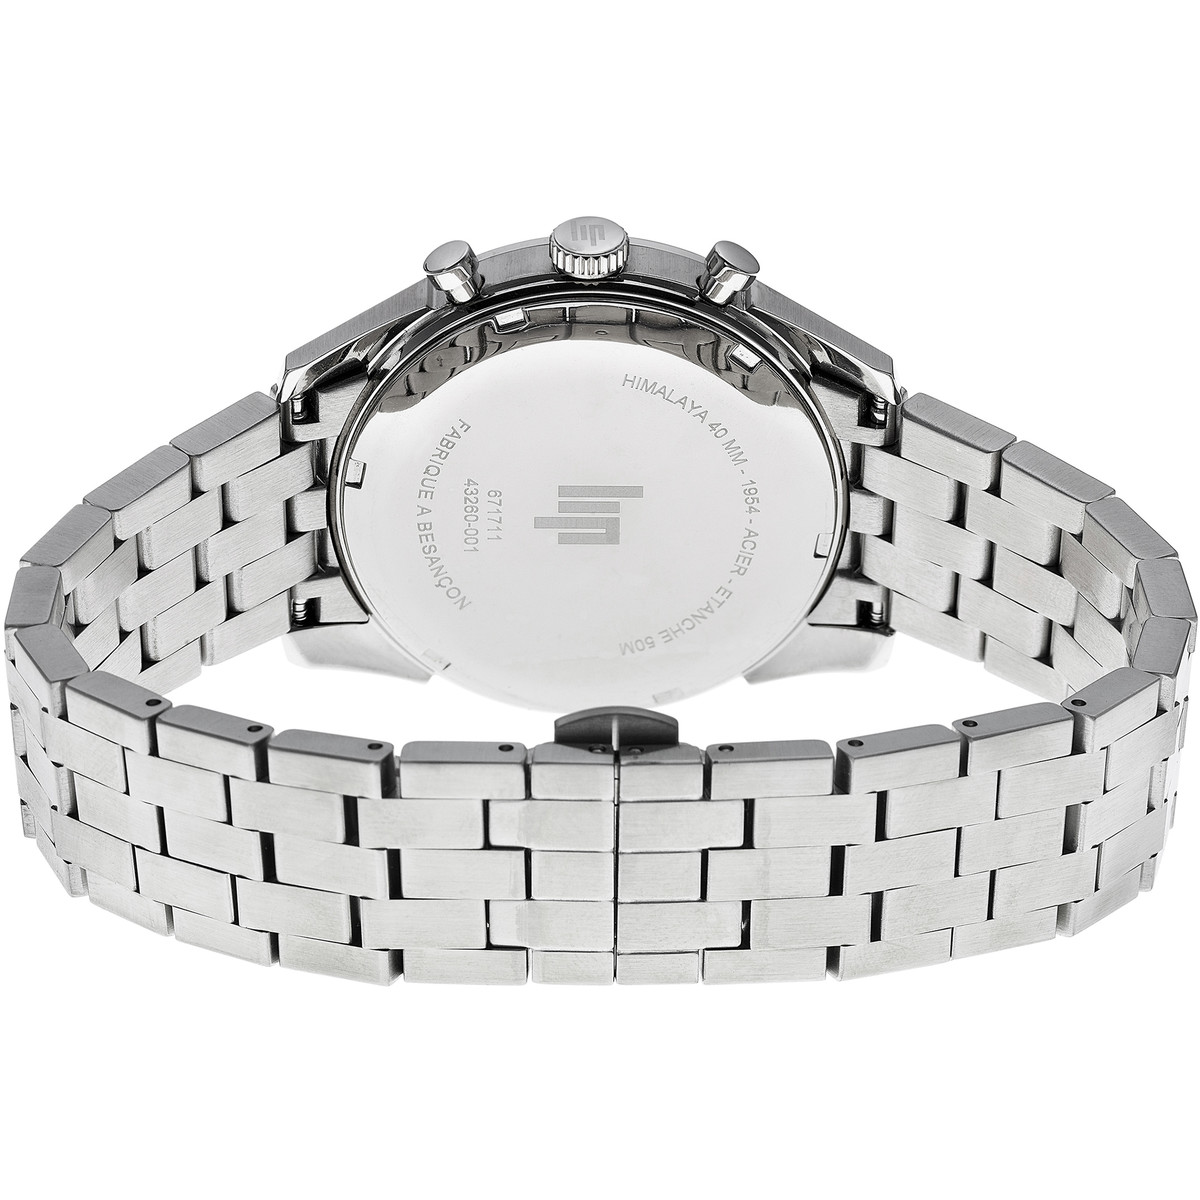 Montre LIP homme chronographe, bracelet métal argent - vue 3